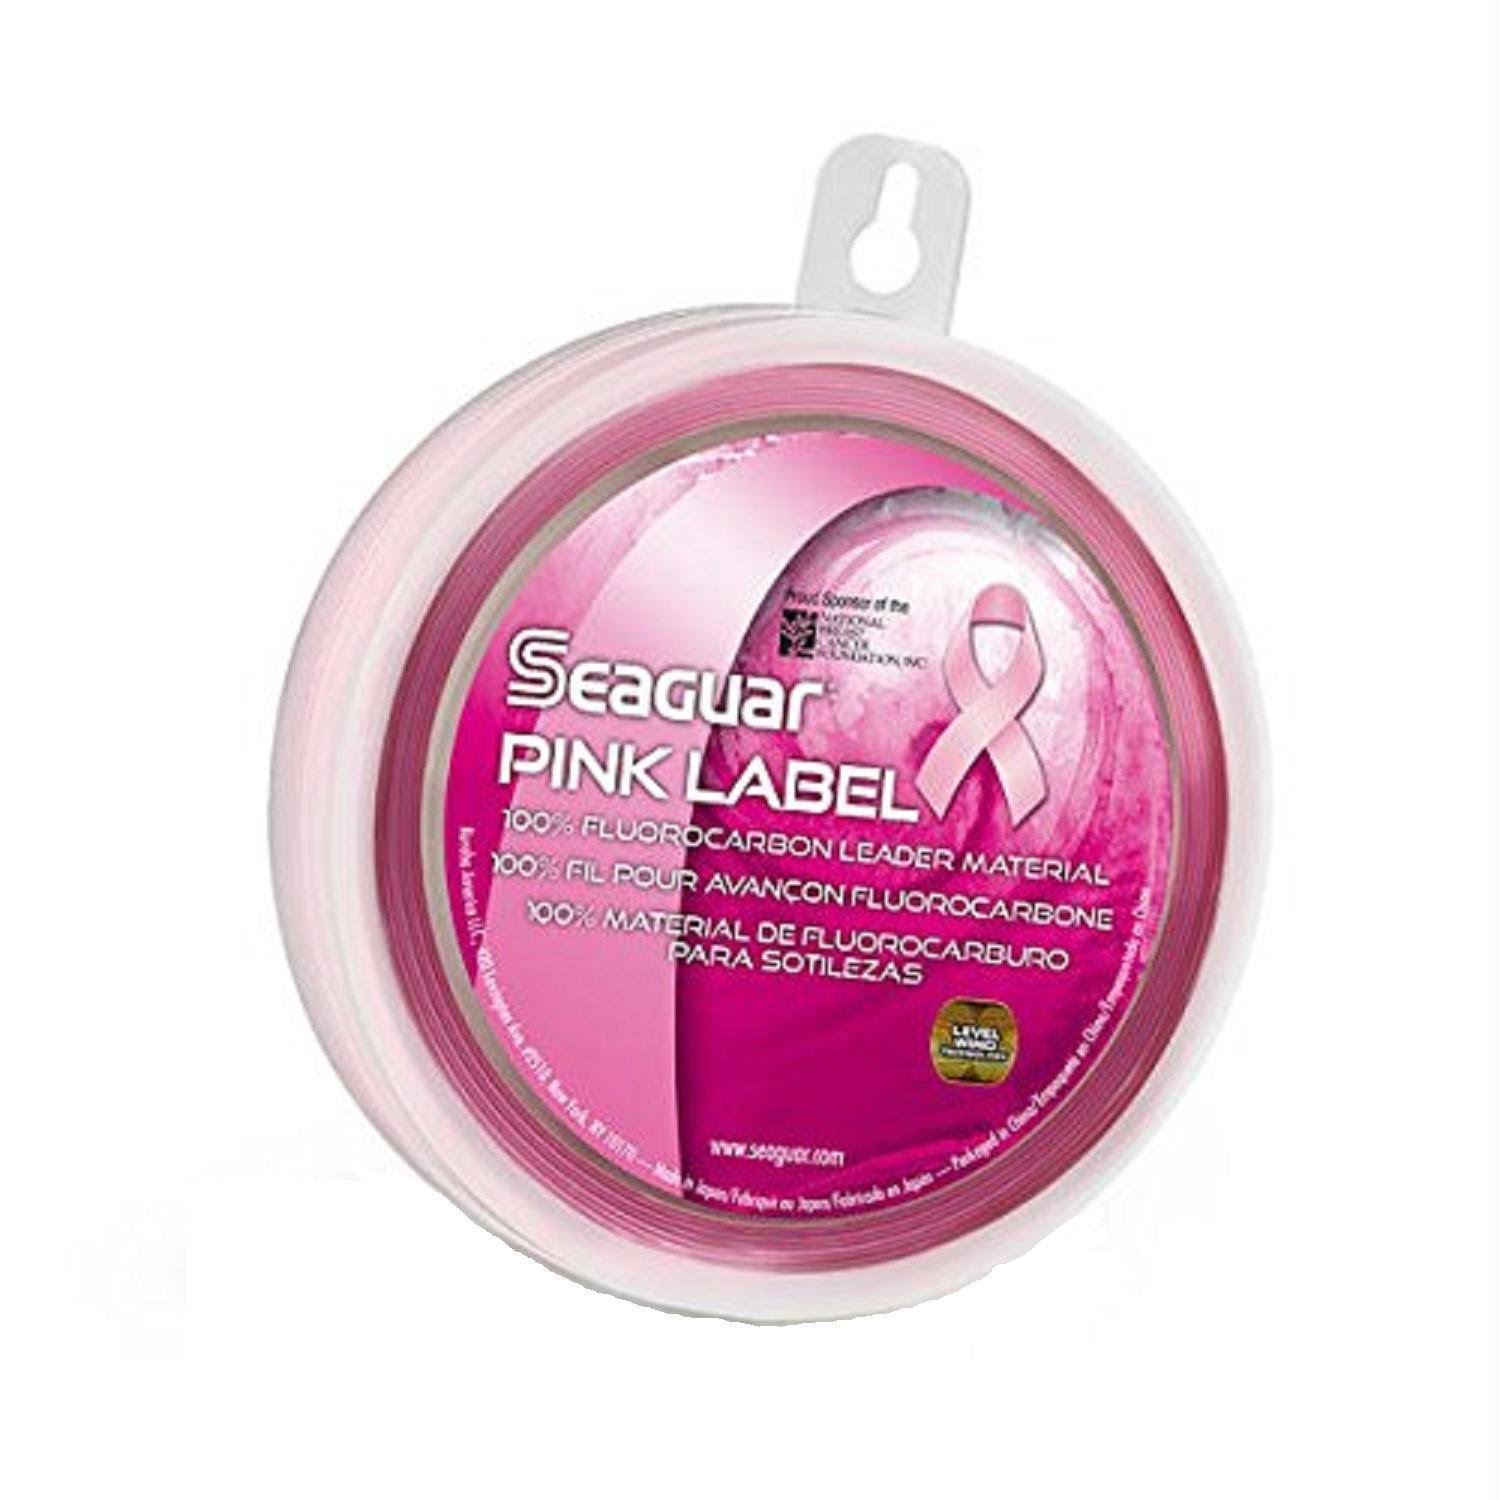 Seaguar Pink Label 100% Fluorocarbon Leader